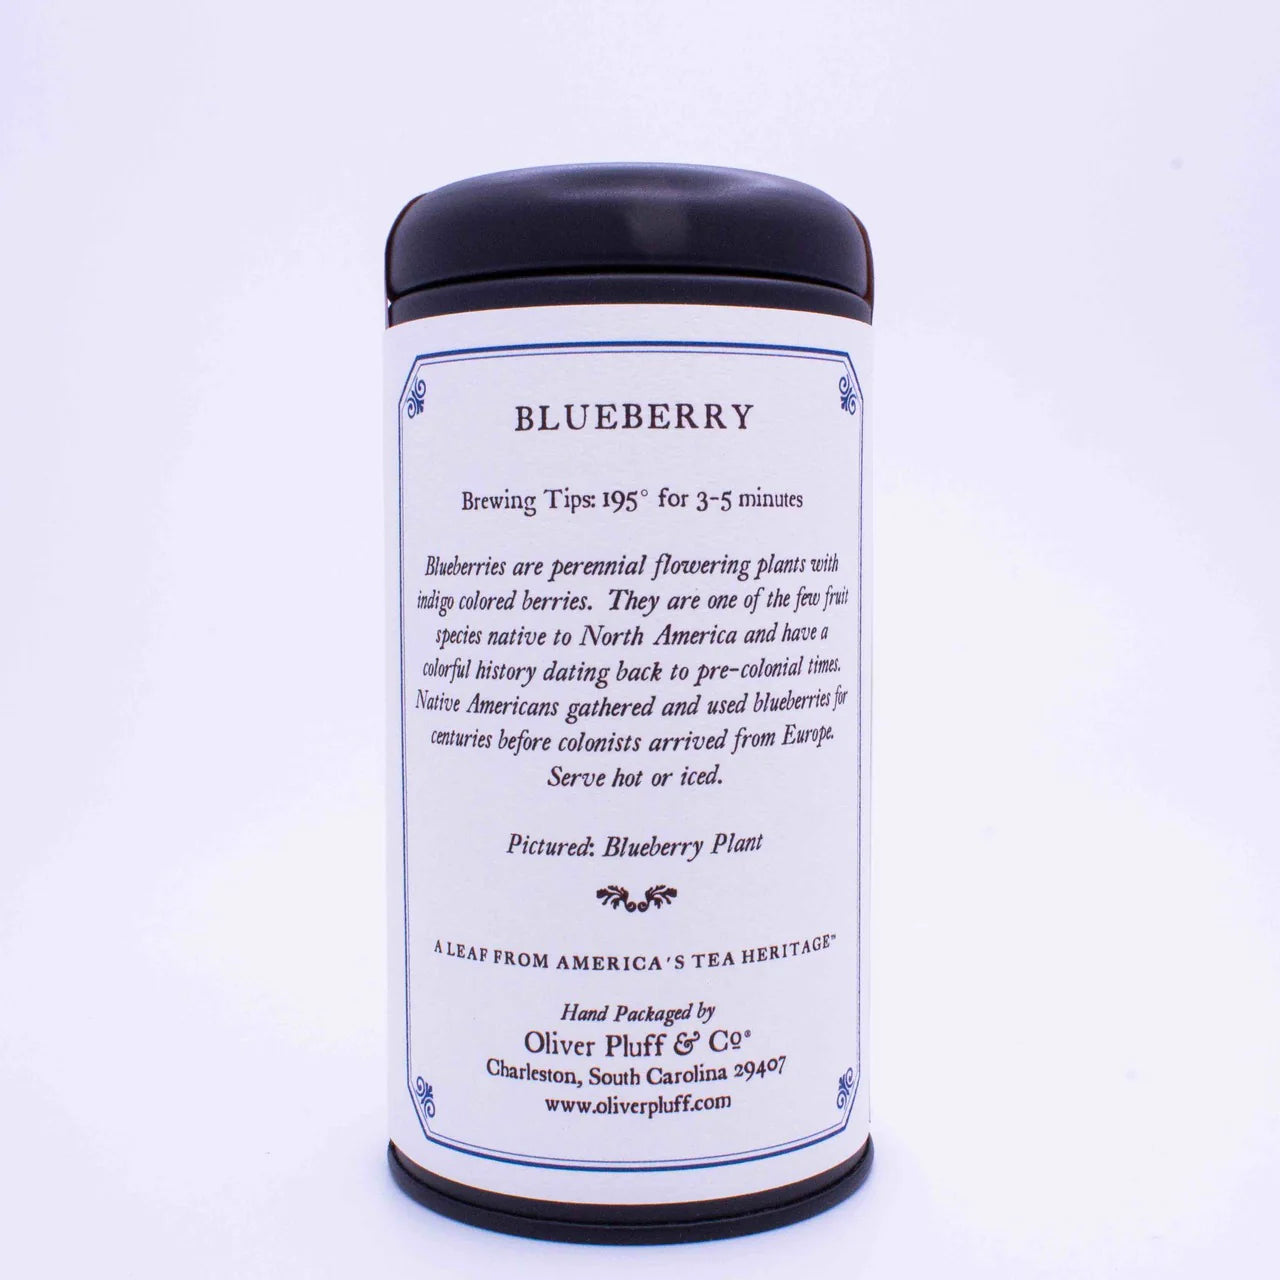 Oliver Pluff & Co.- Blueberry Loose Leaf Tea